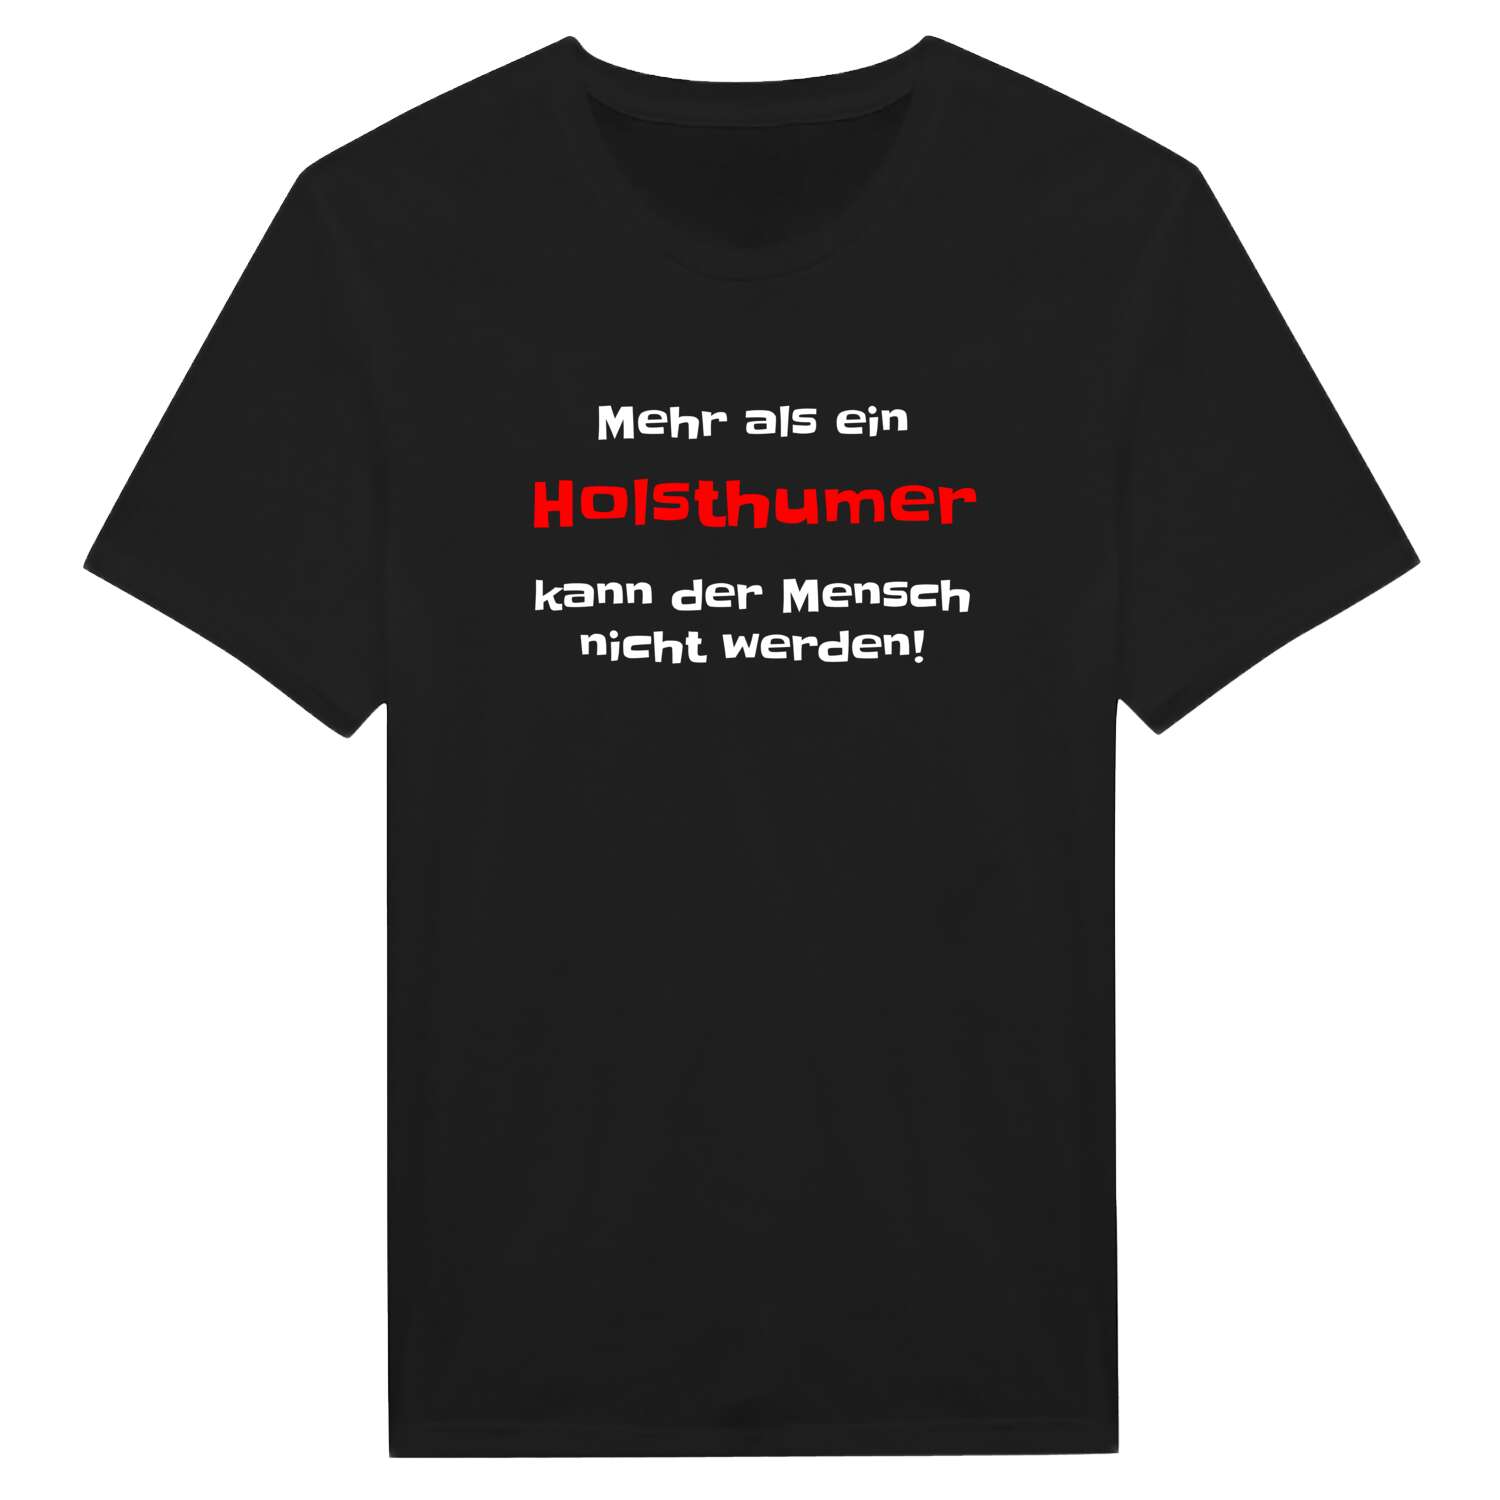 Holsthum T-Shirt »Mehr als ein«